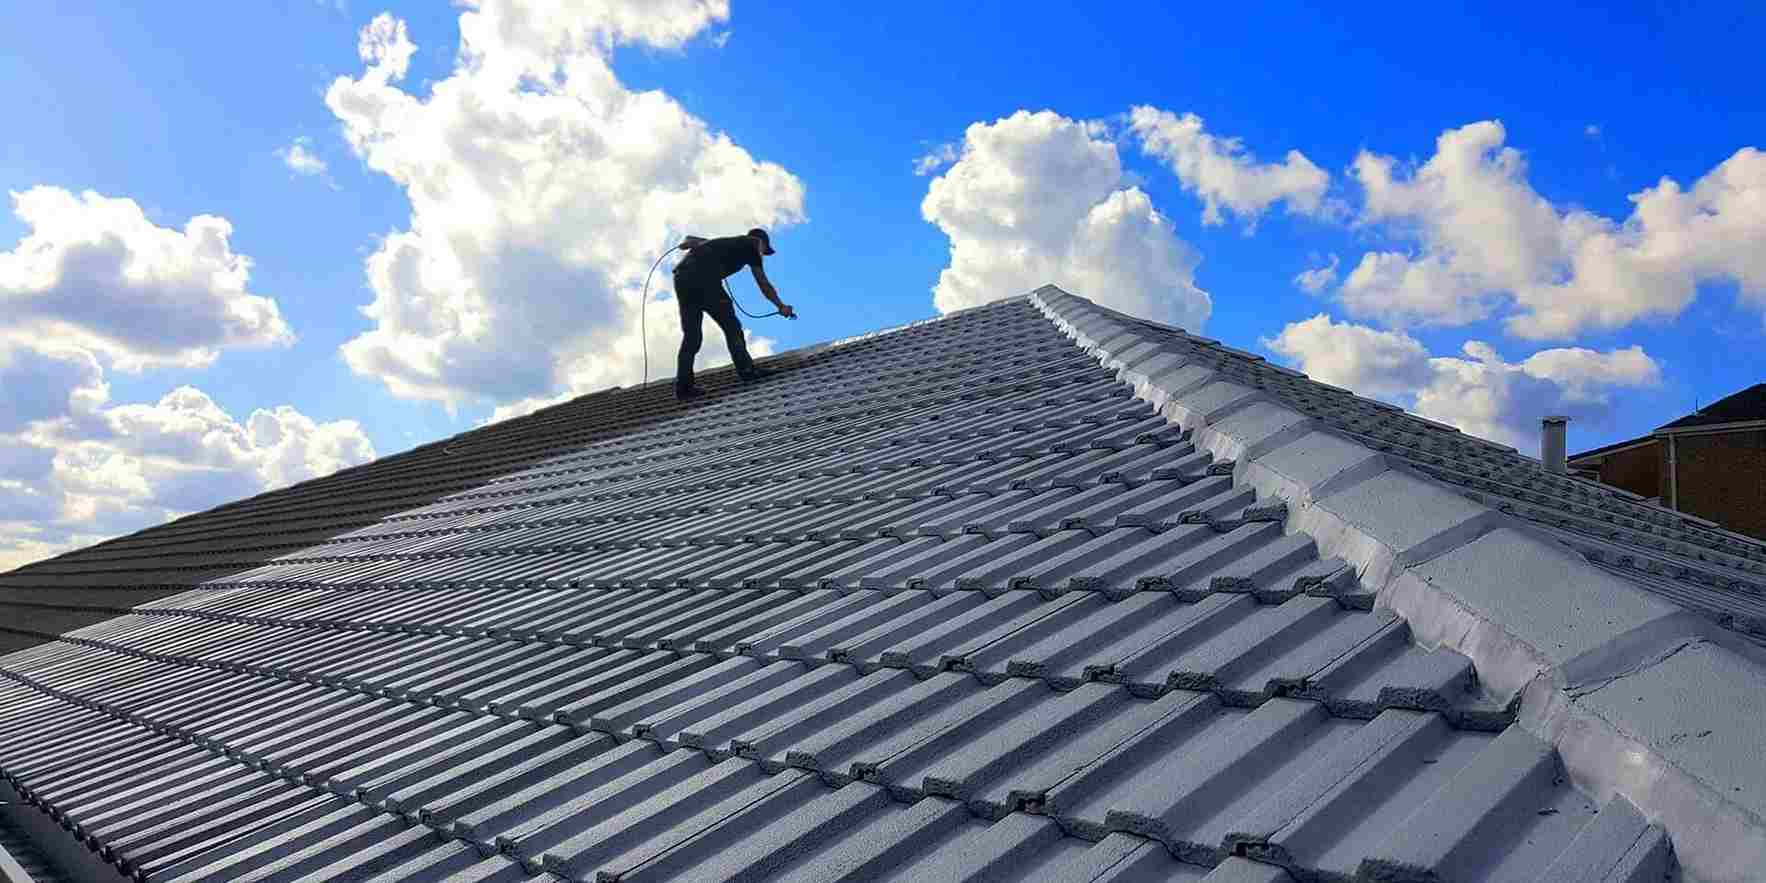 United Veterans Roofing - Philadelphia